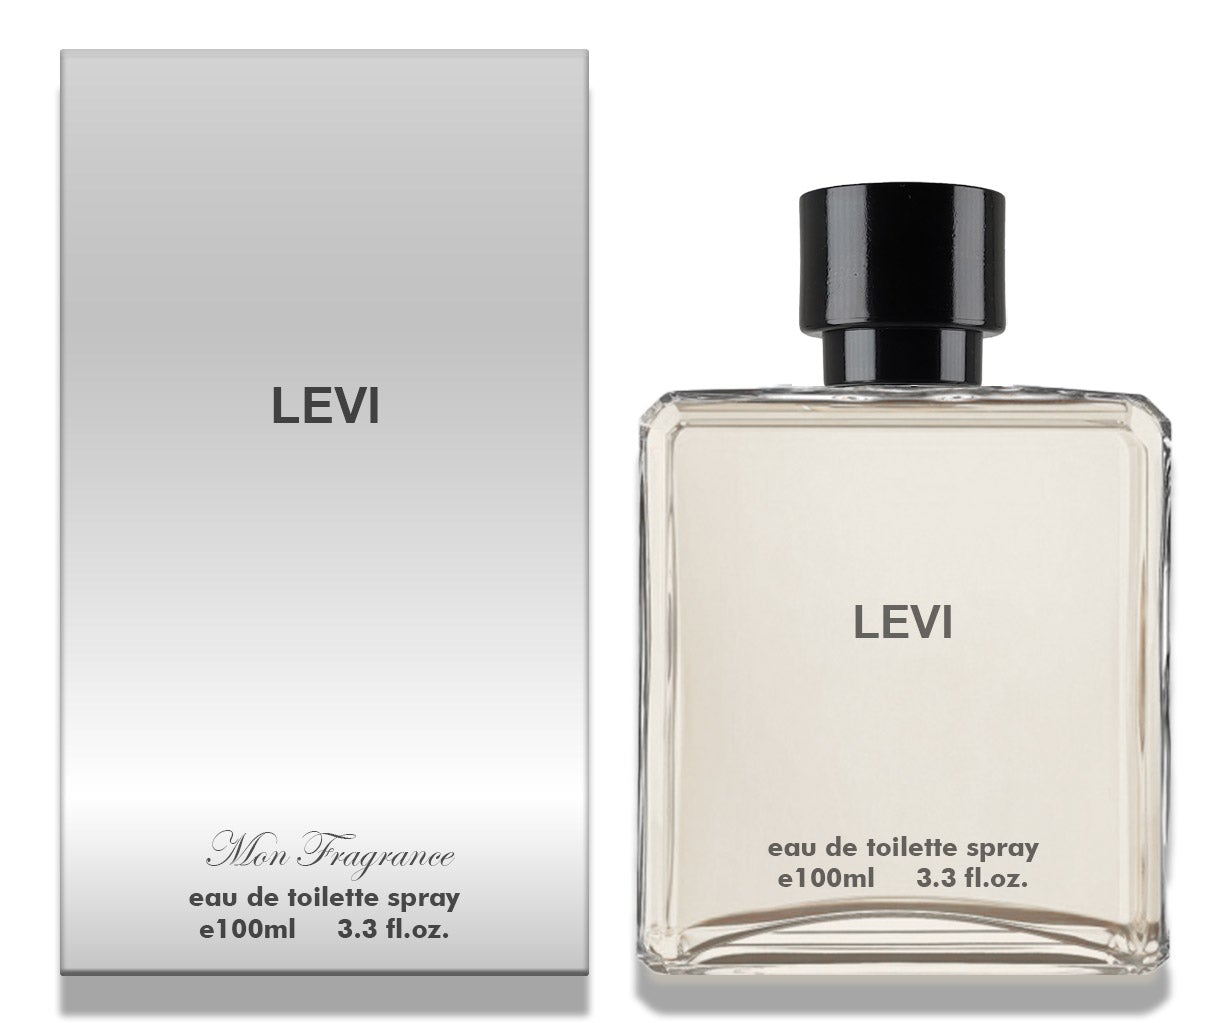 LEVI, Eau De Toilette Spray 100ml – Perfume Lion